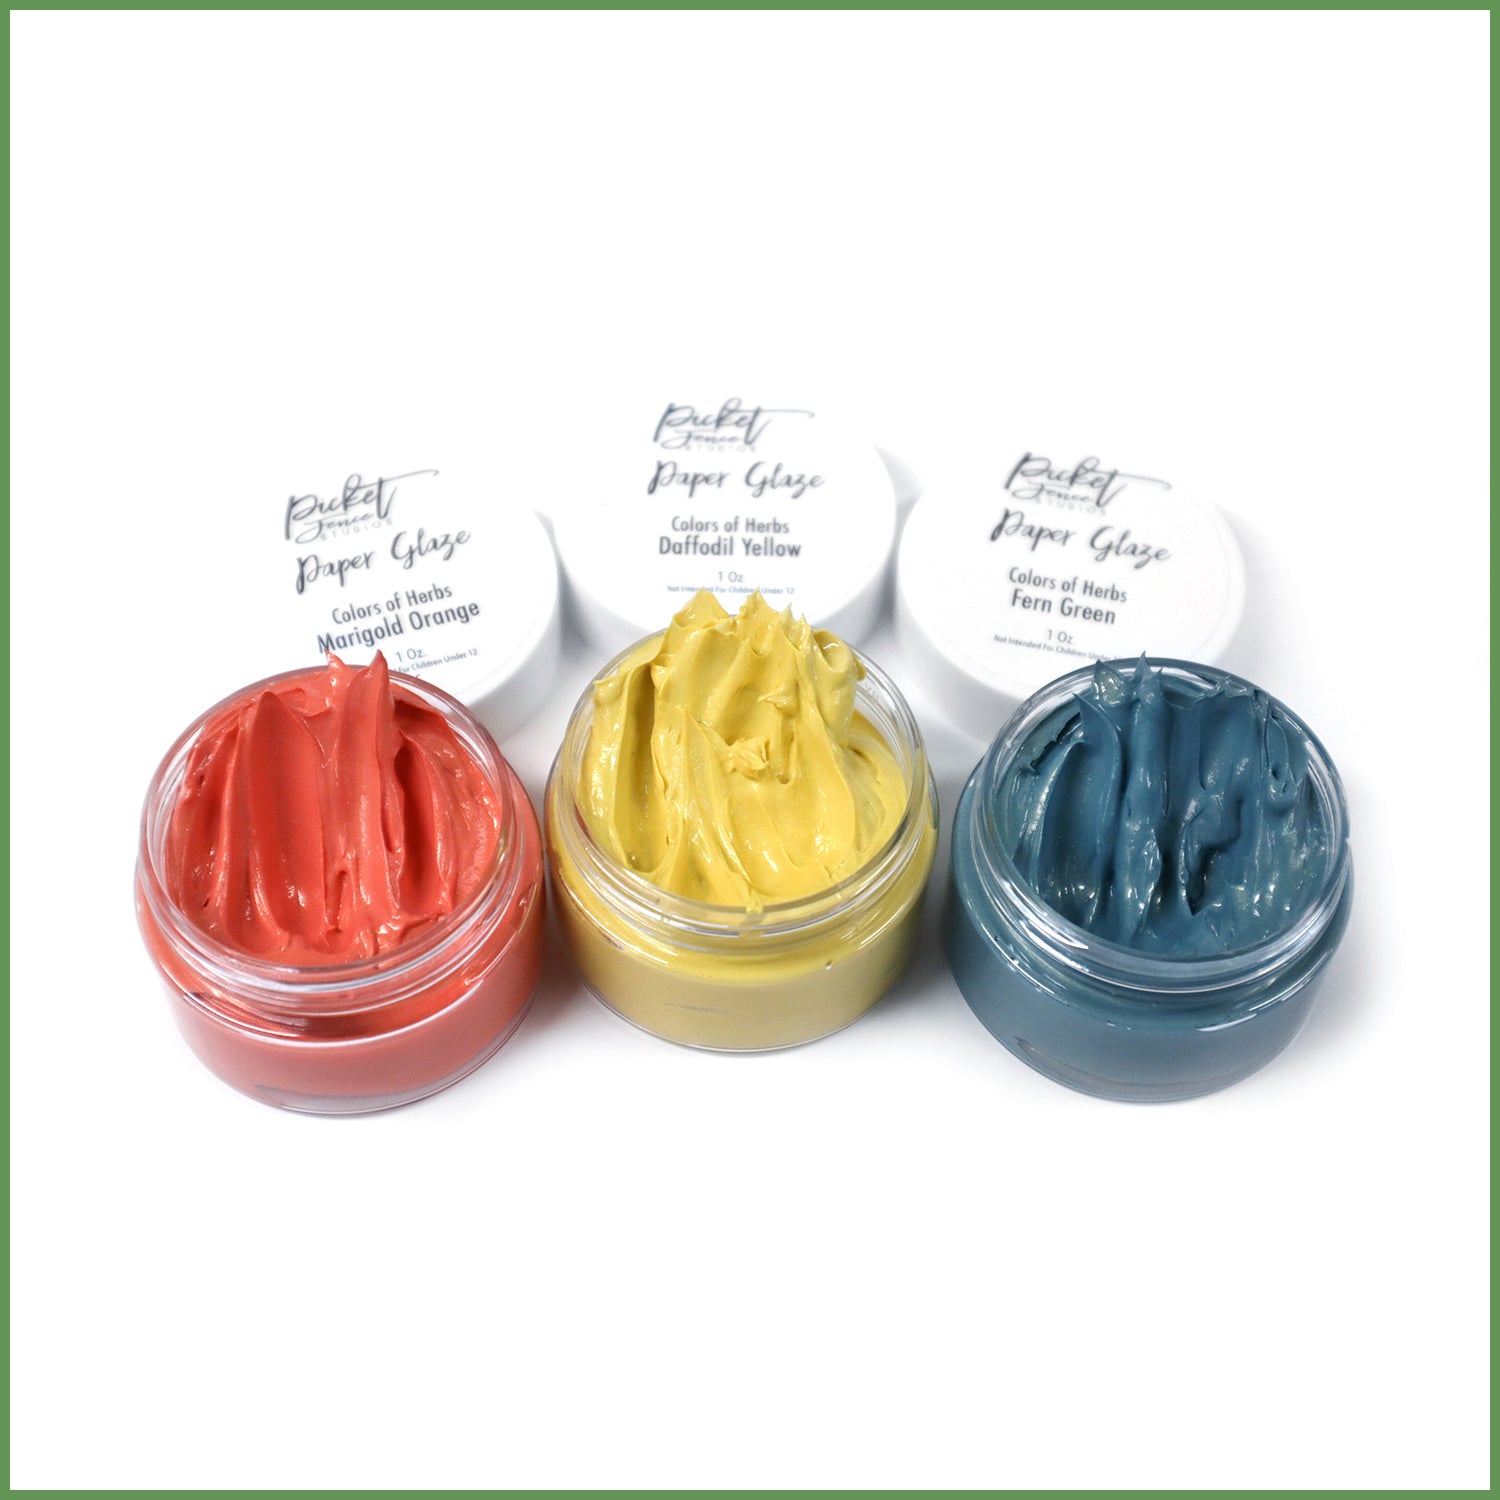 Paper Glaze Colors of Herbs Sampler Set